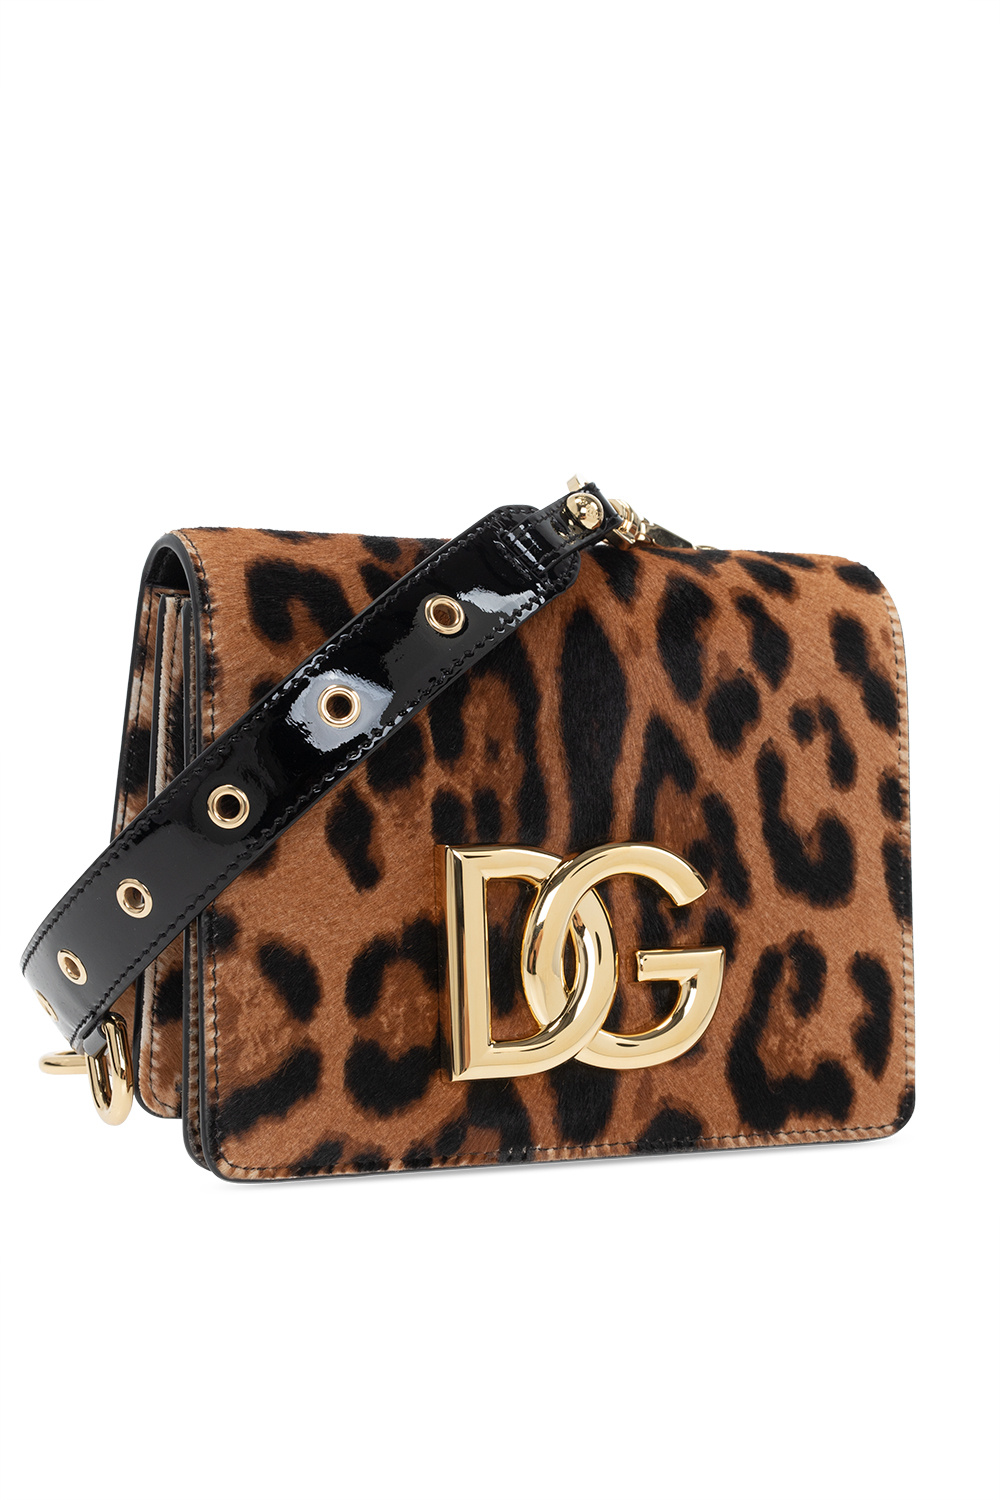 Dolce & Gabbana Dolce & Gabbana fold out purse